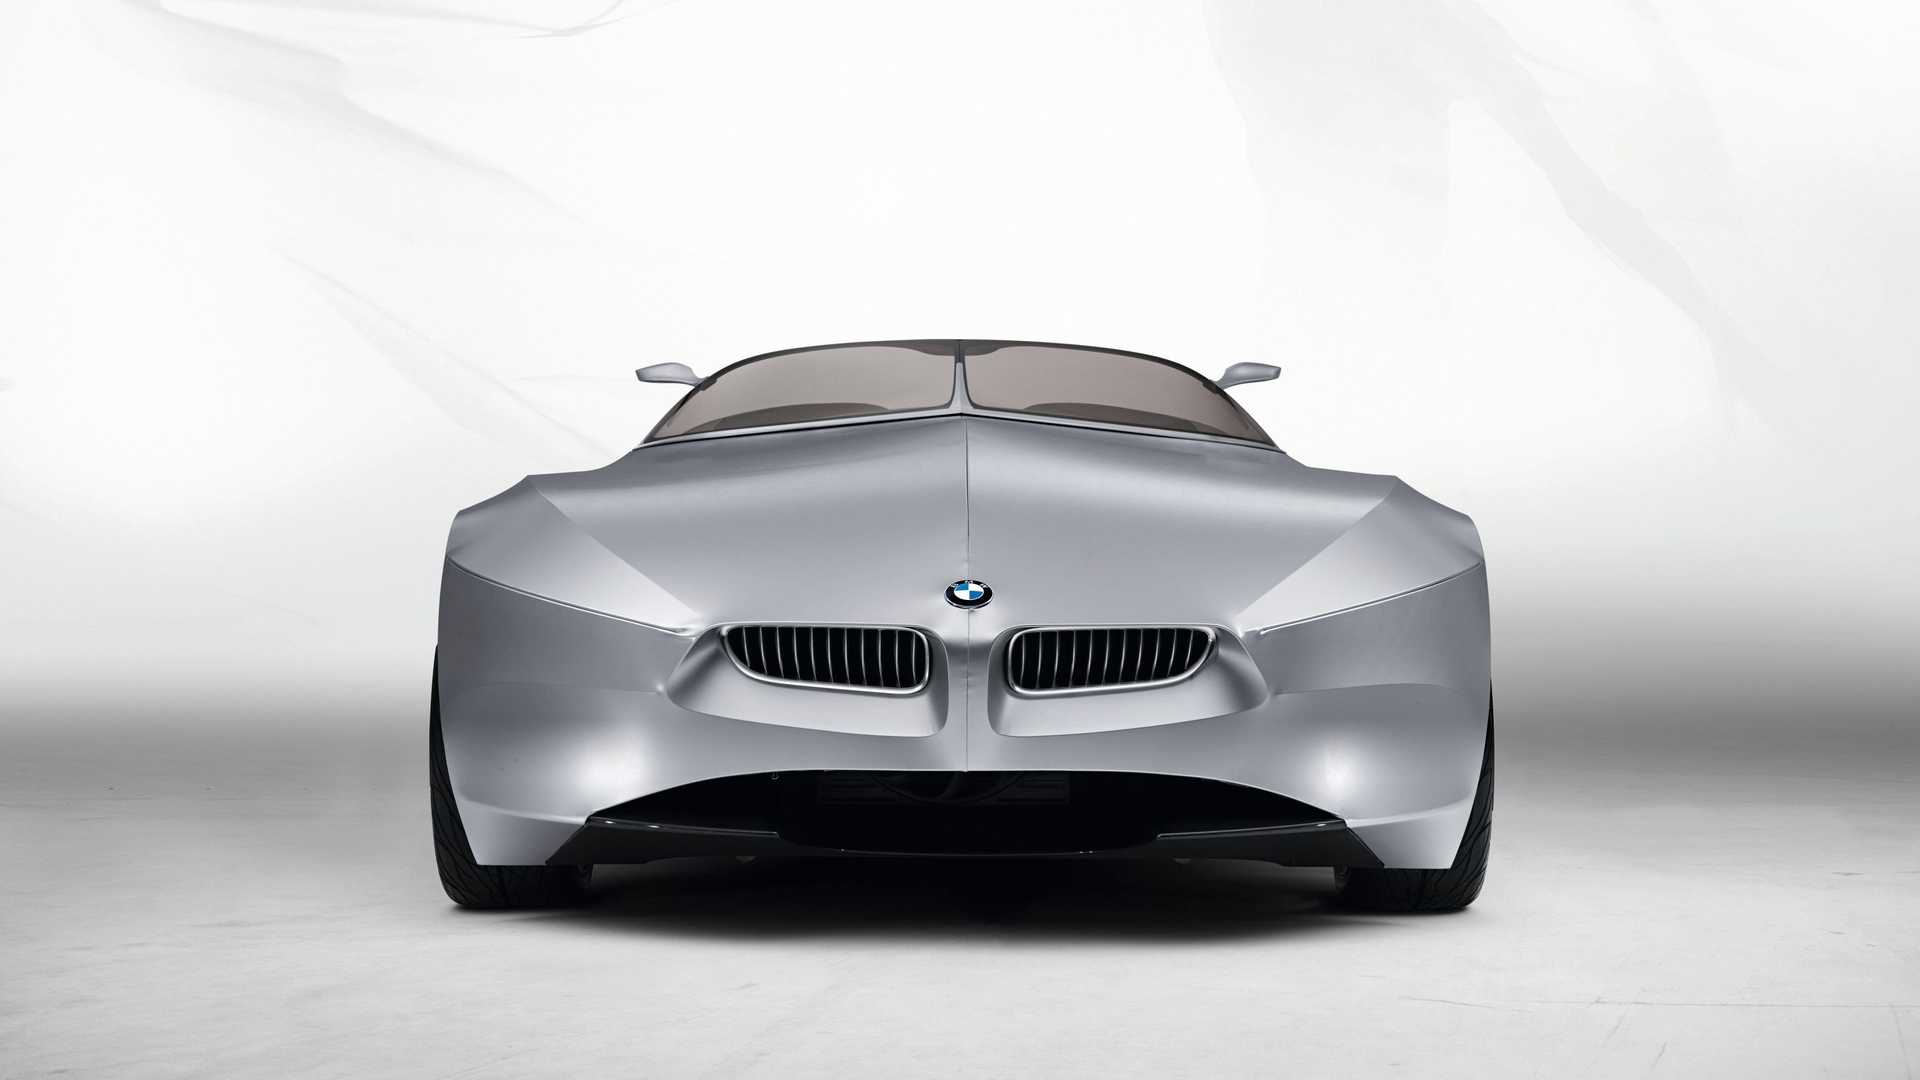 نمای جلو خودروی مفهومی روباز بی ام و گینا / BMW GINA concept convertible